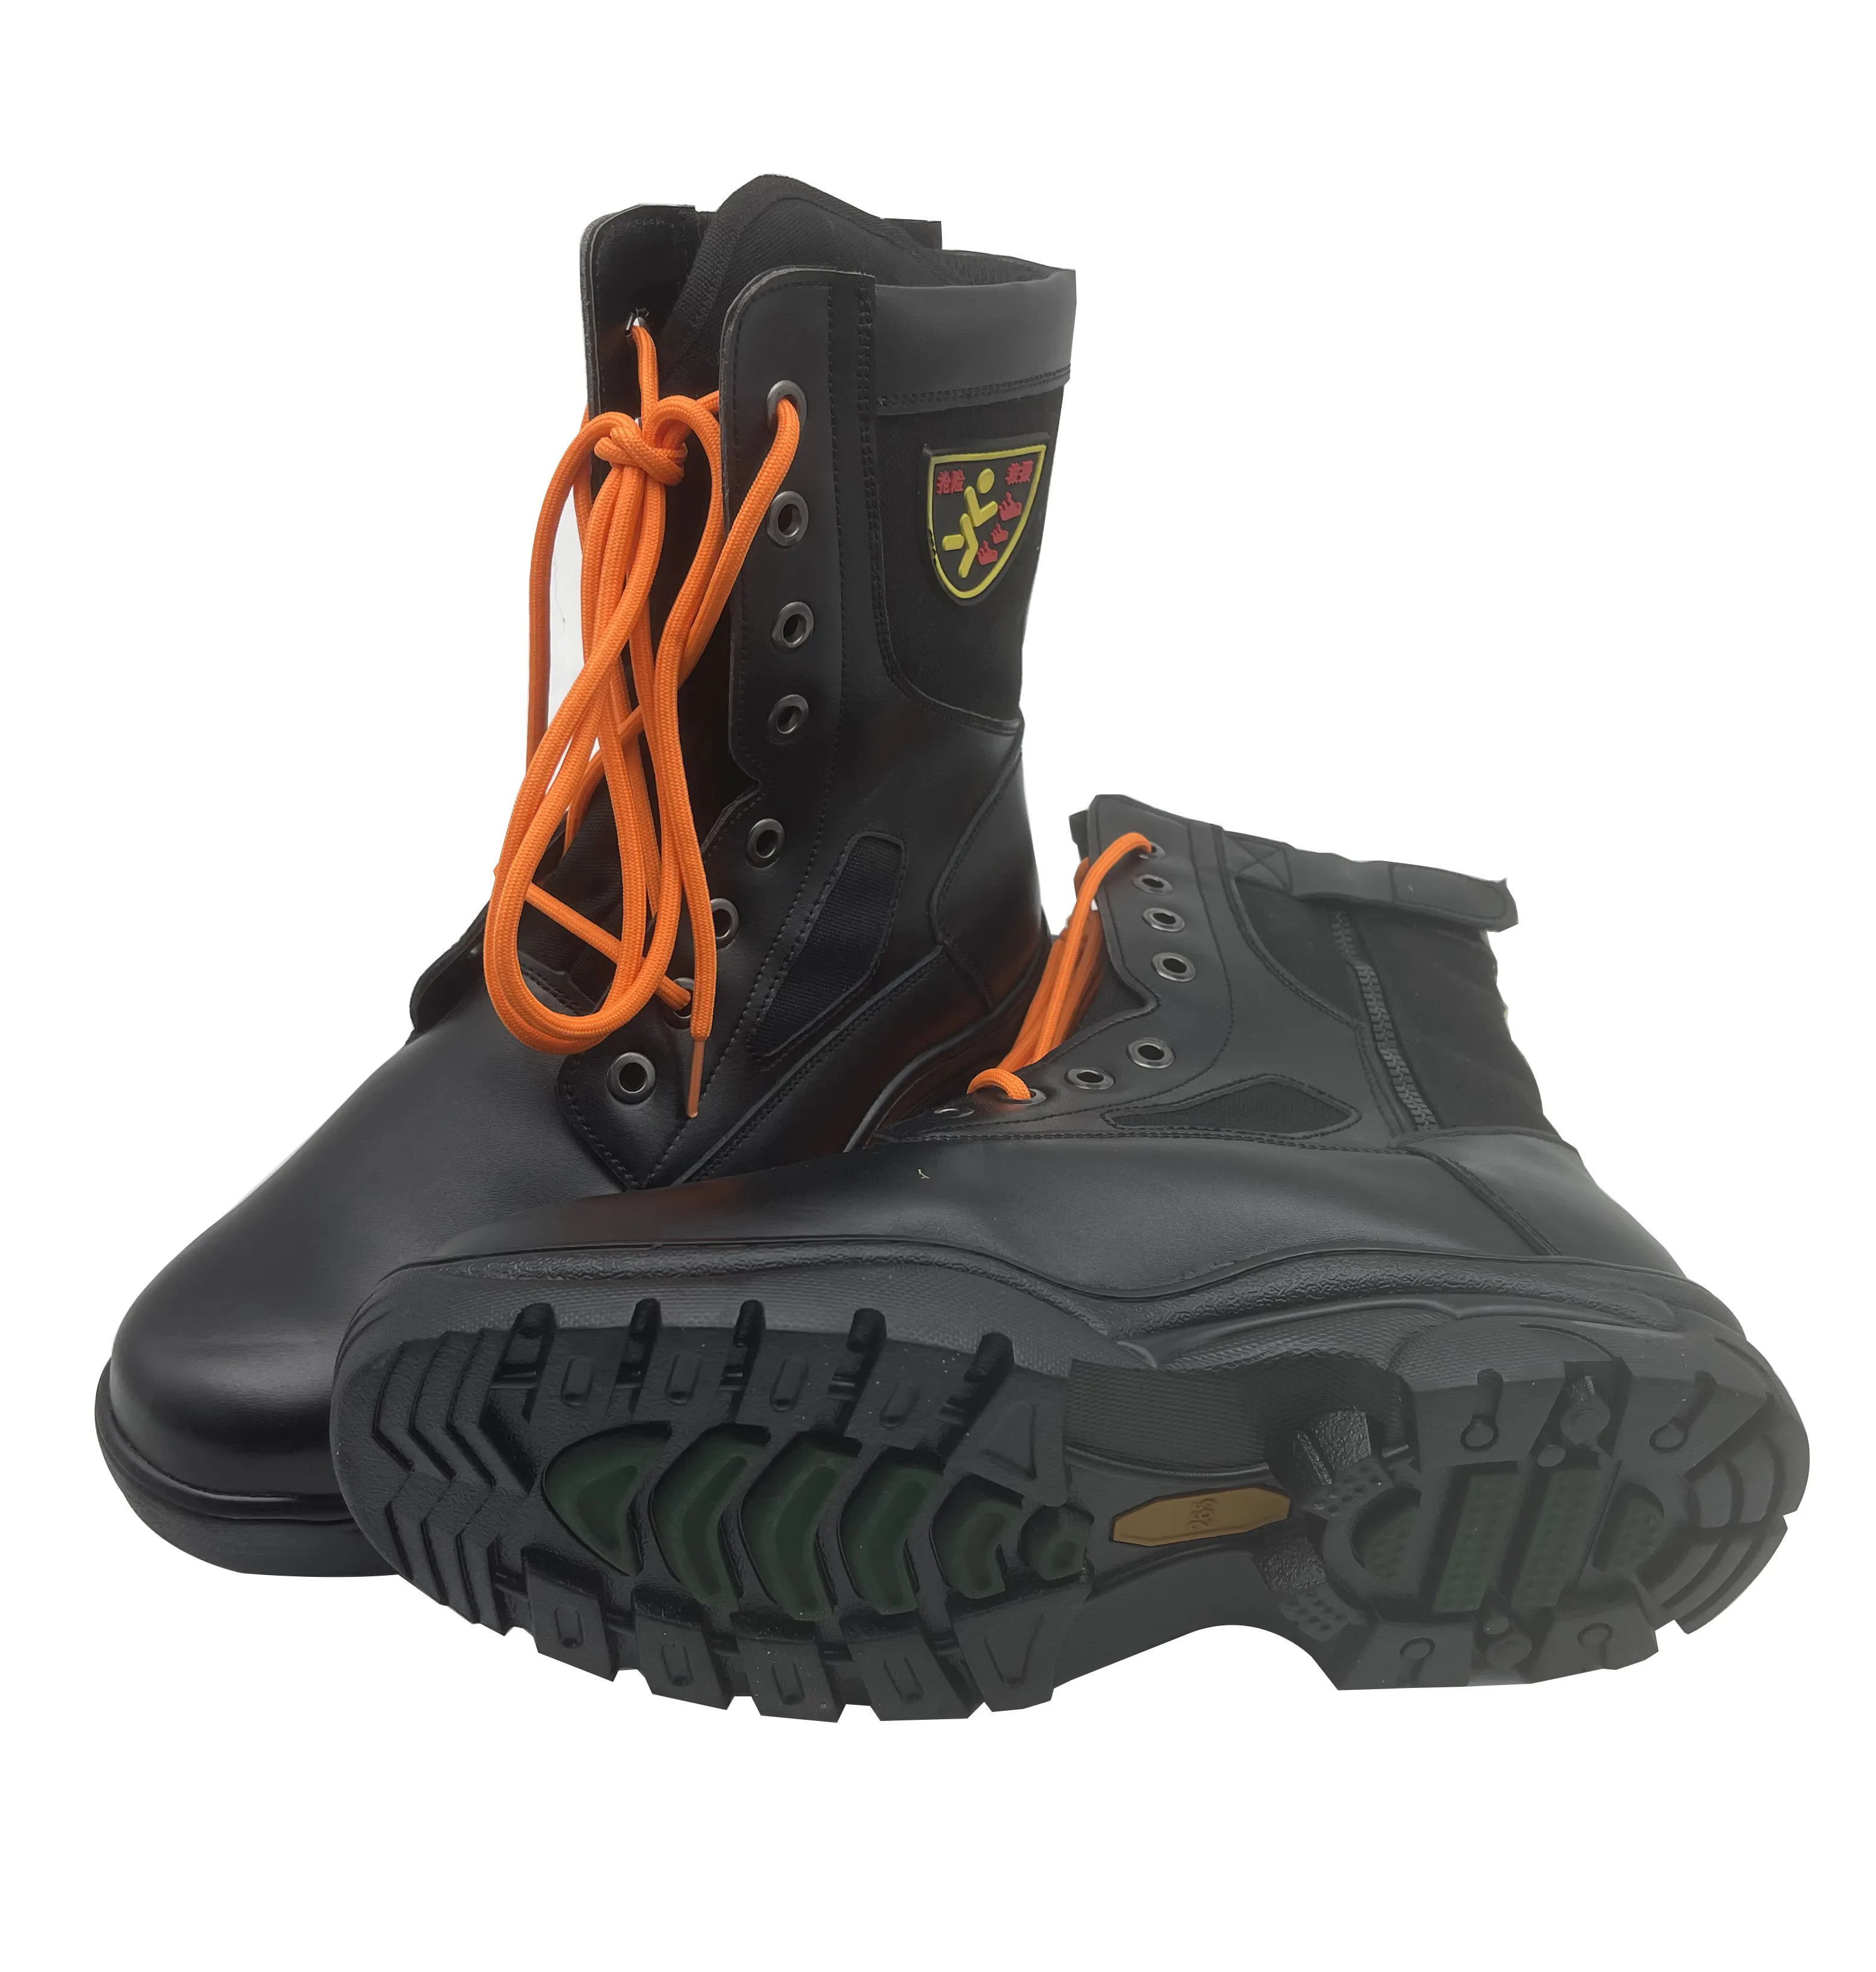 حار بيع النار مقاتلة الأحذية البراري مقاوم للحريق الأحذية مقاتلة الانقاذ الطوارئ أحذية السلامة أحذية السلامة والجلود